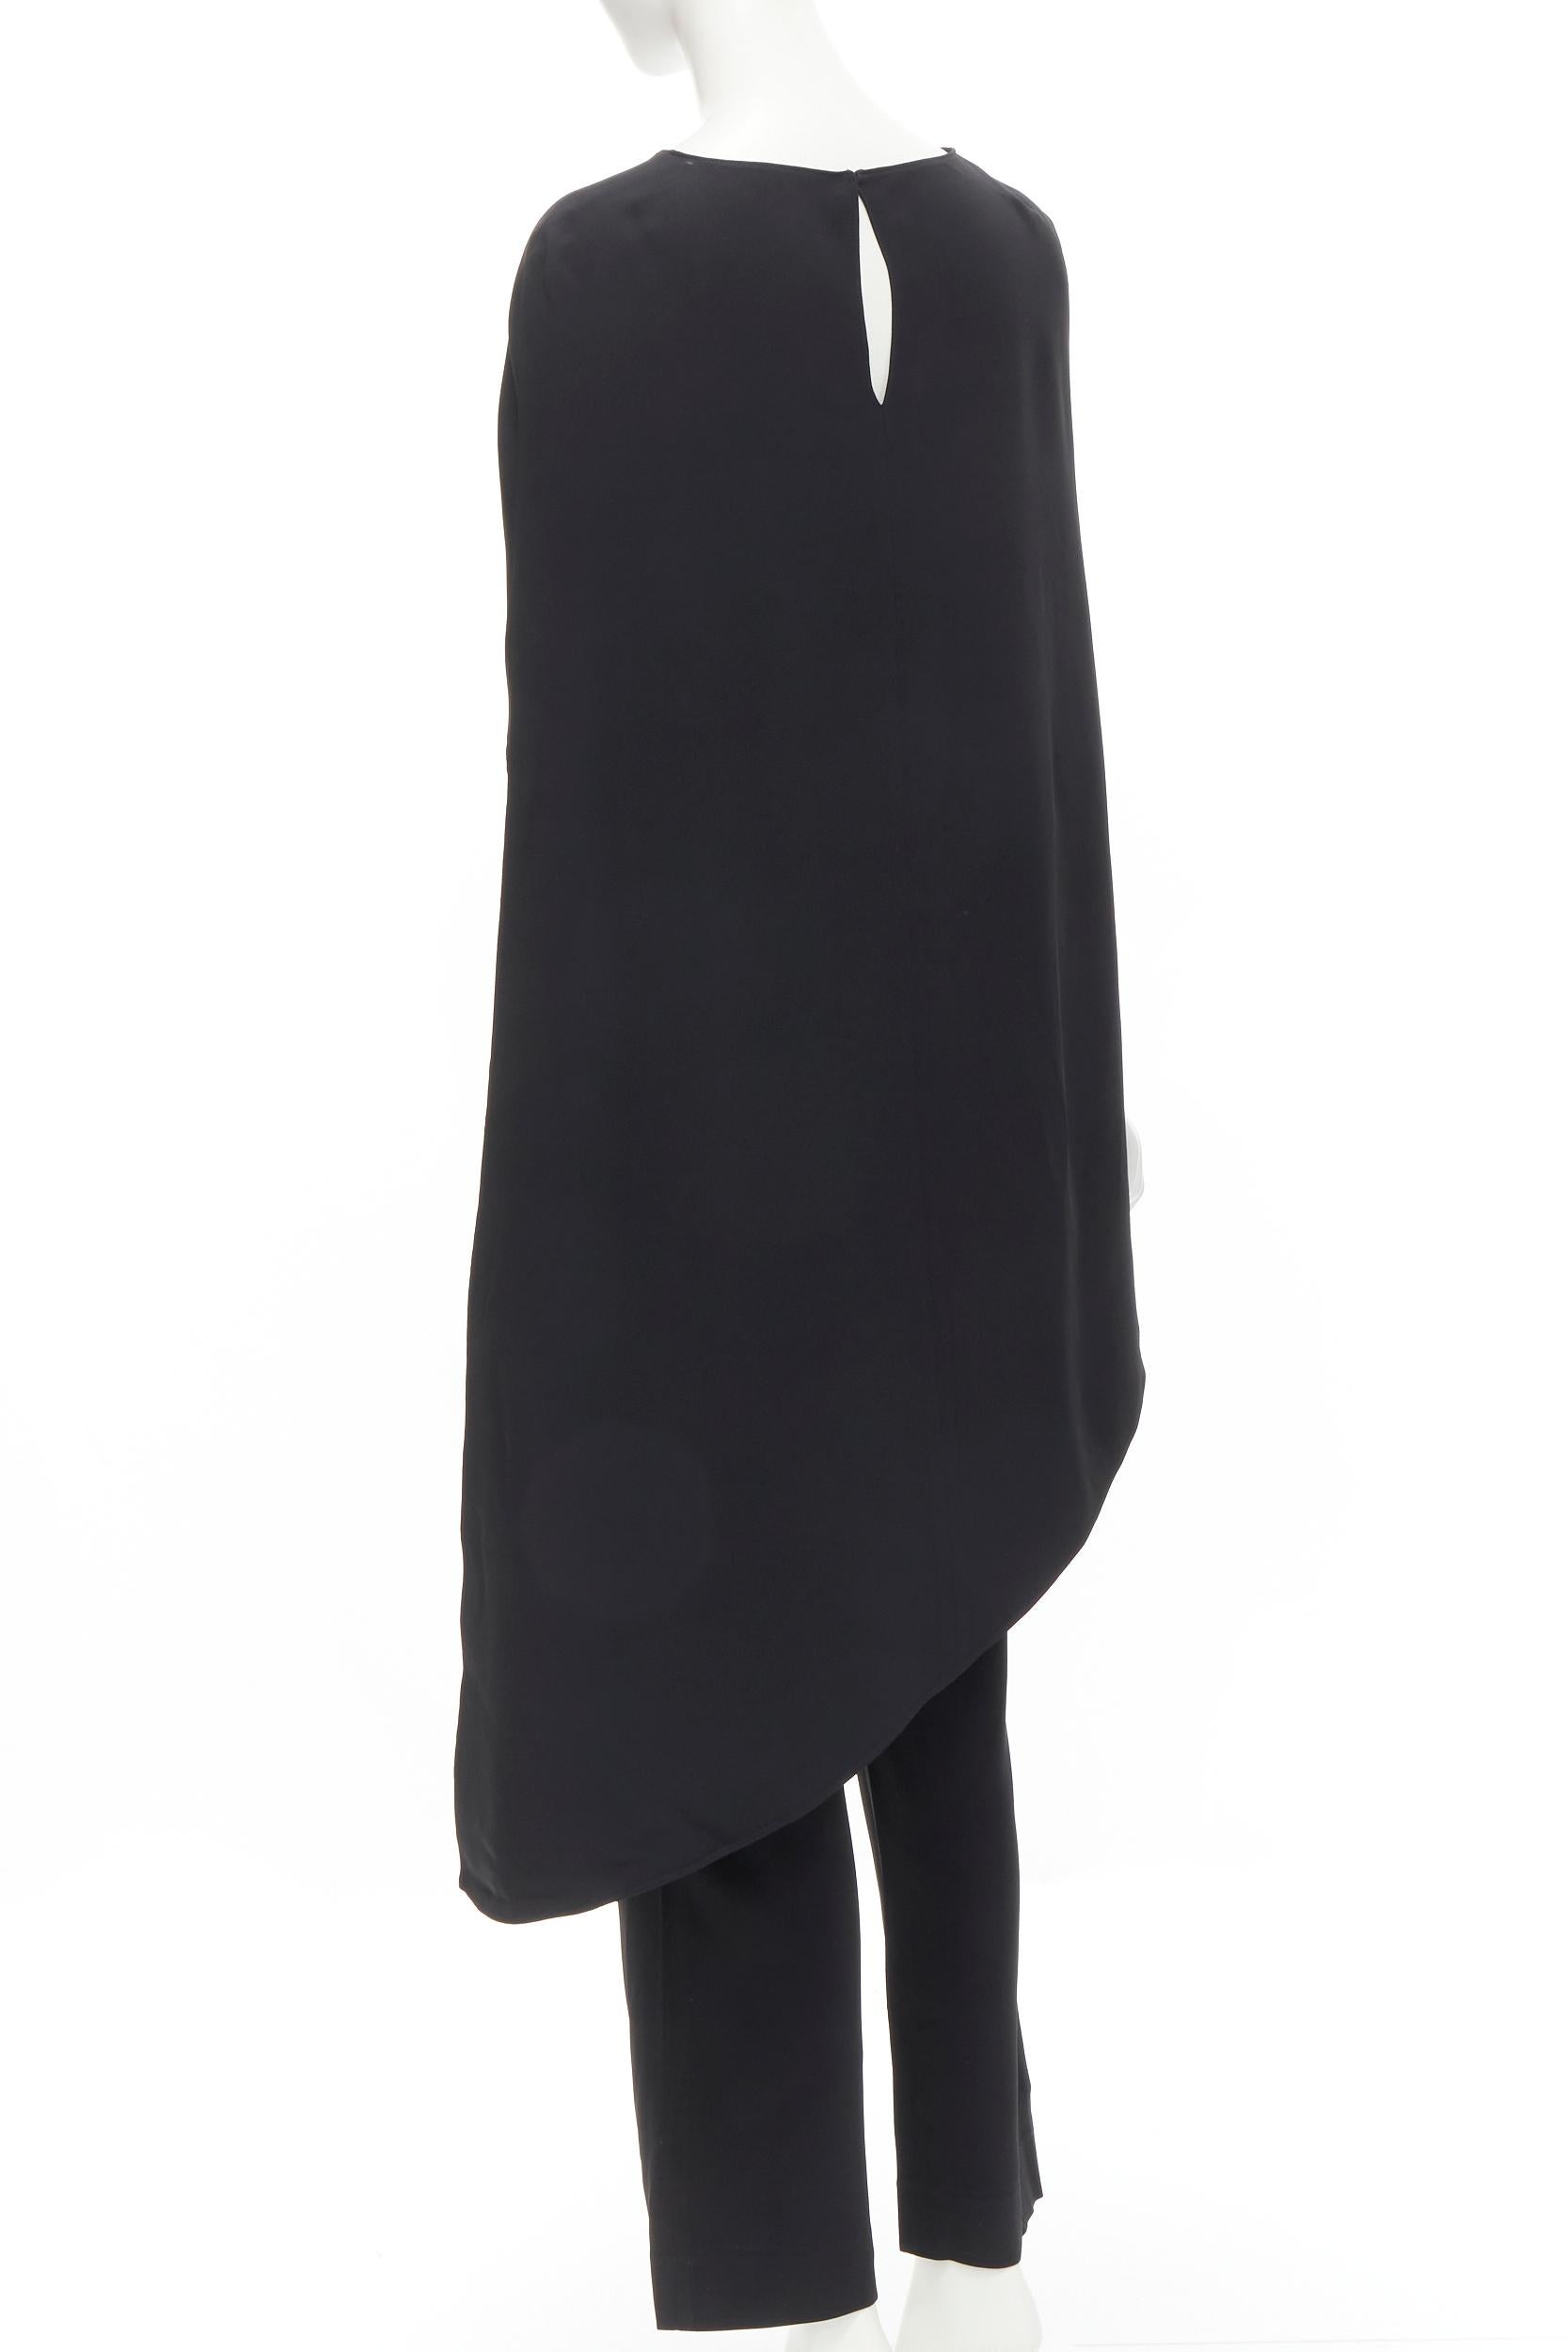 ESTABAN CORTEZAR black open back asymmetric cape jumpsuit FR38 S For Sale 1